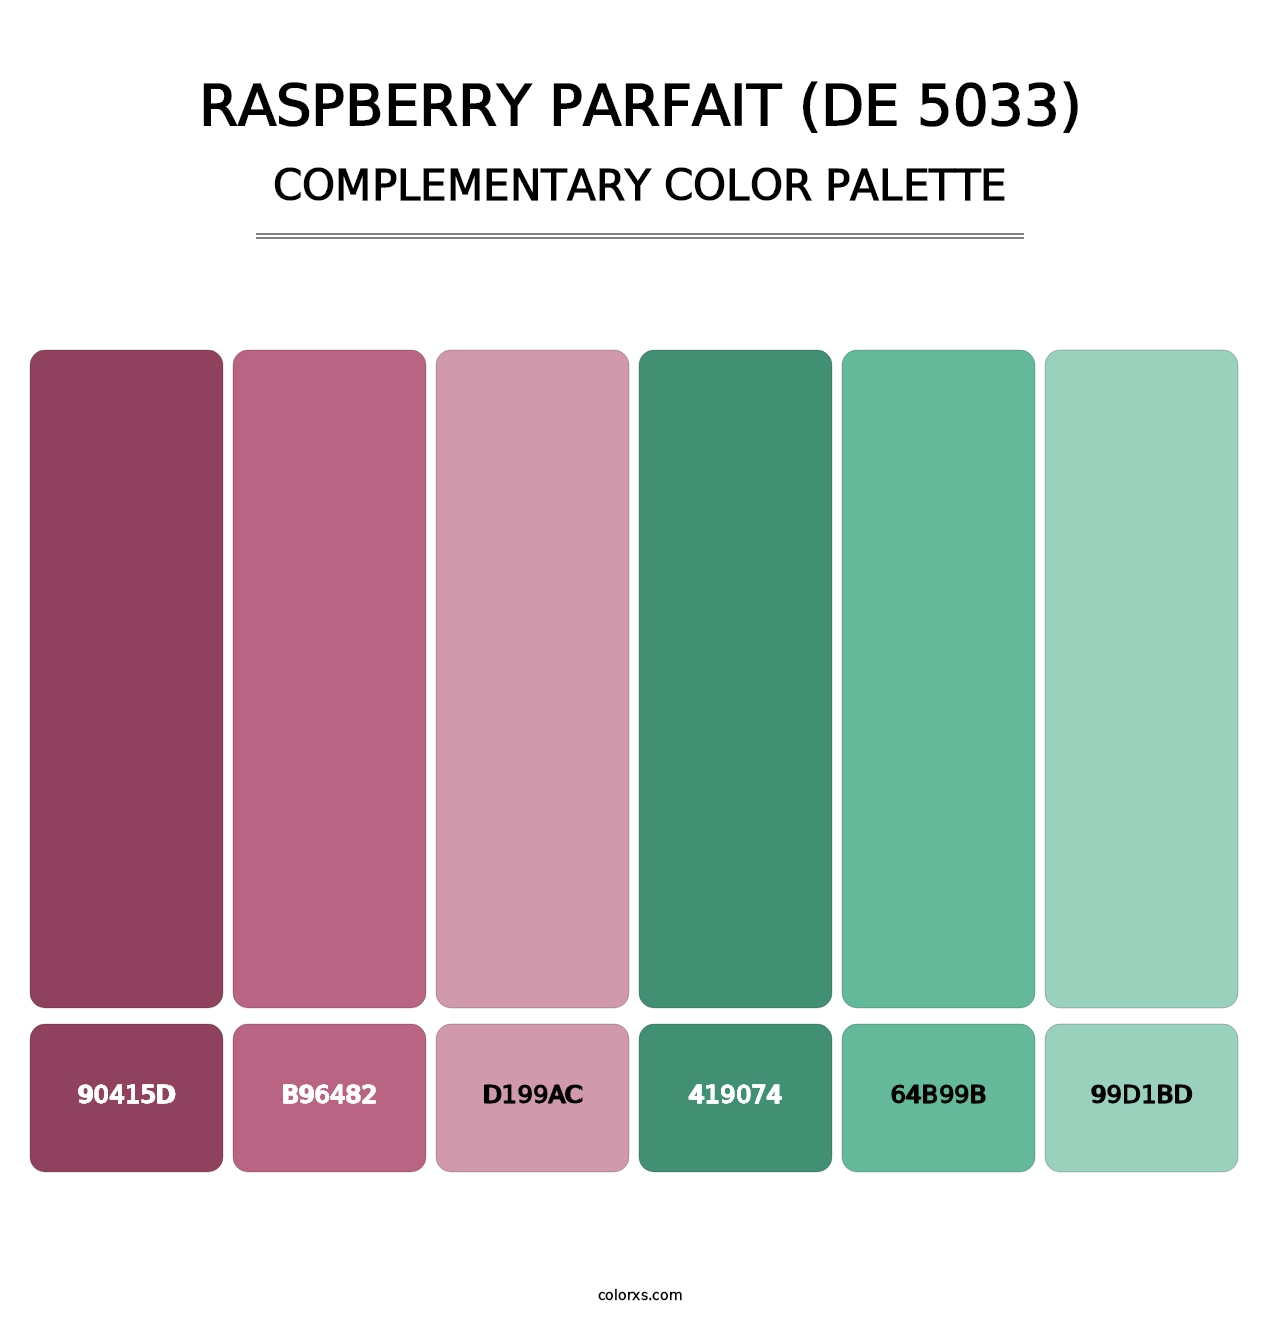 Raspberry Parfait (DE 5033) - Complementary Color Palette